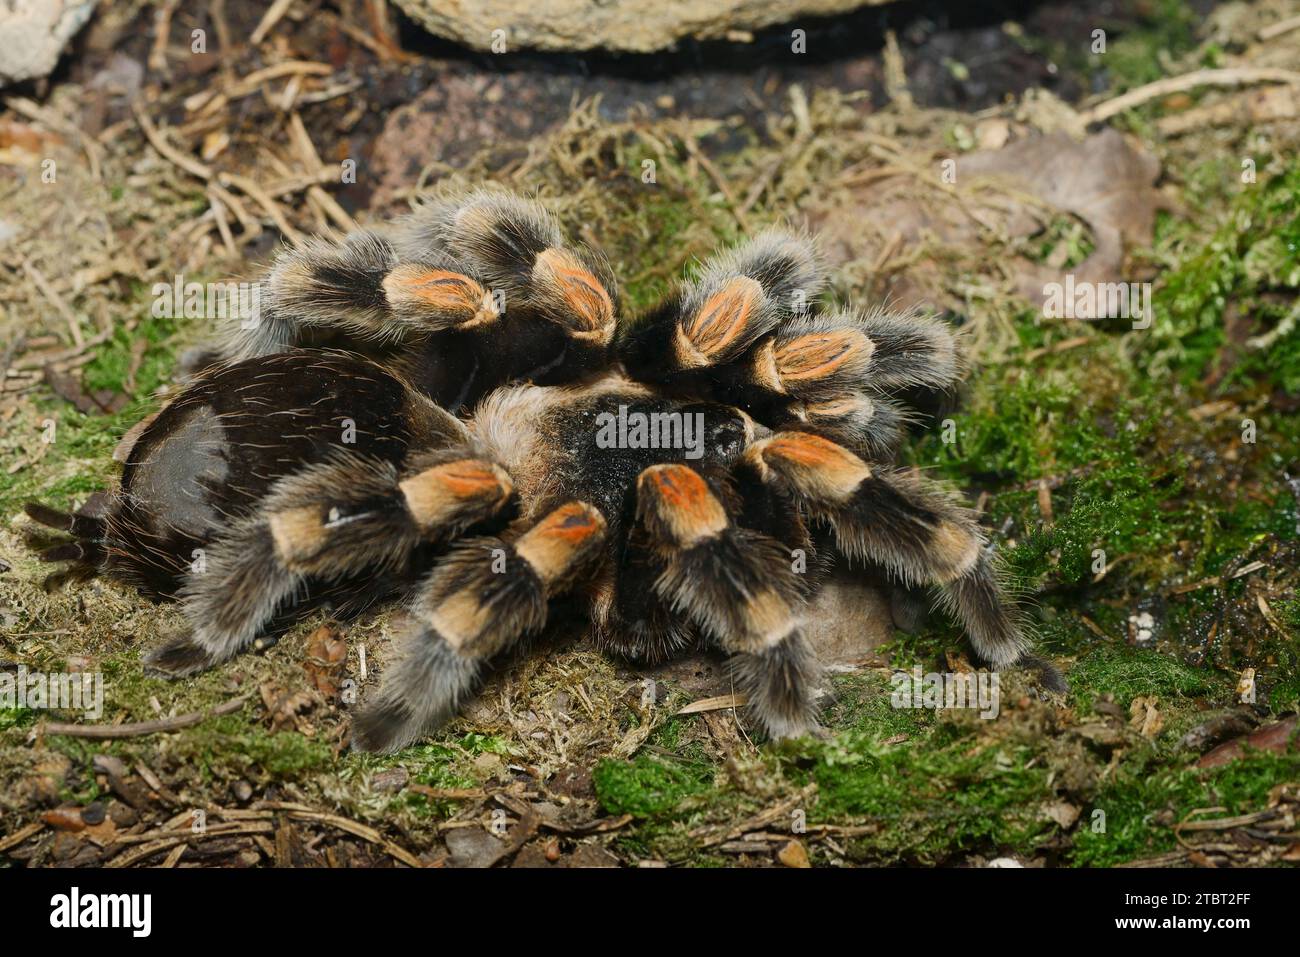 Mexican red-kneed tarantula (Brachypelma smithi) Stock Photo